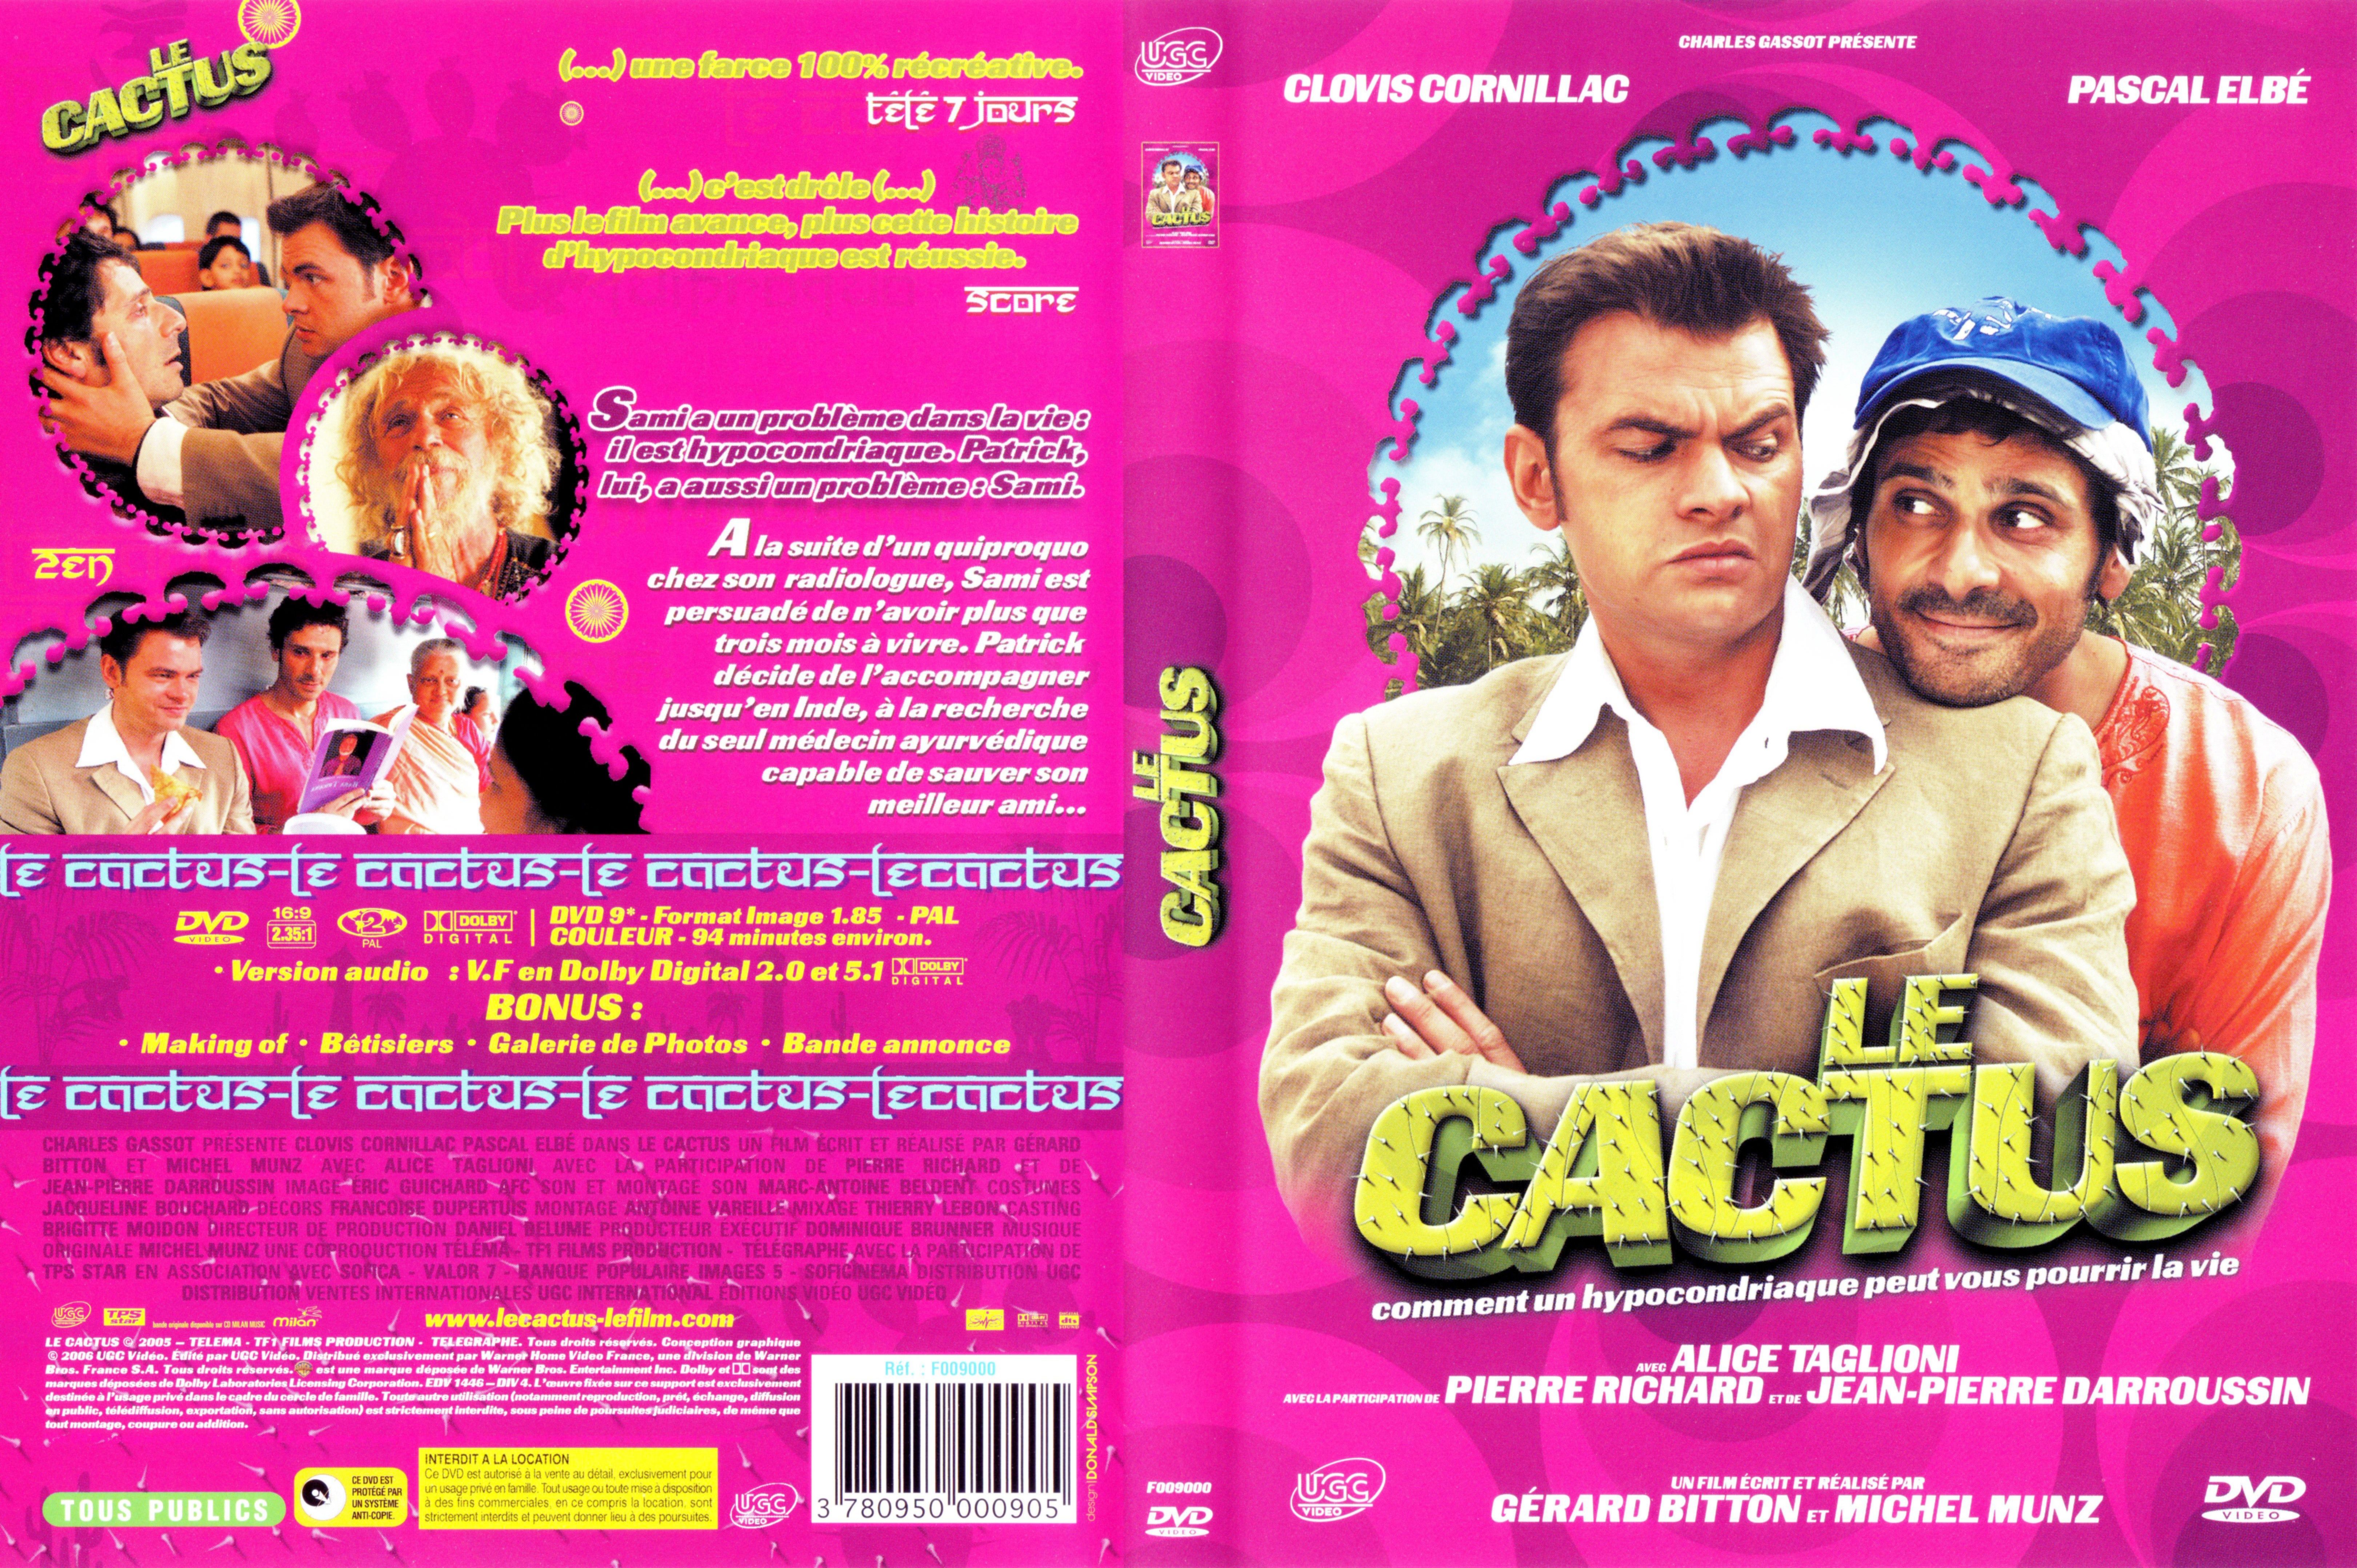 Jaquette DVD Le cactus